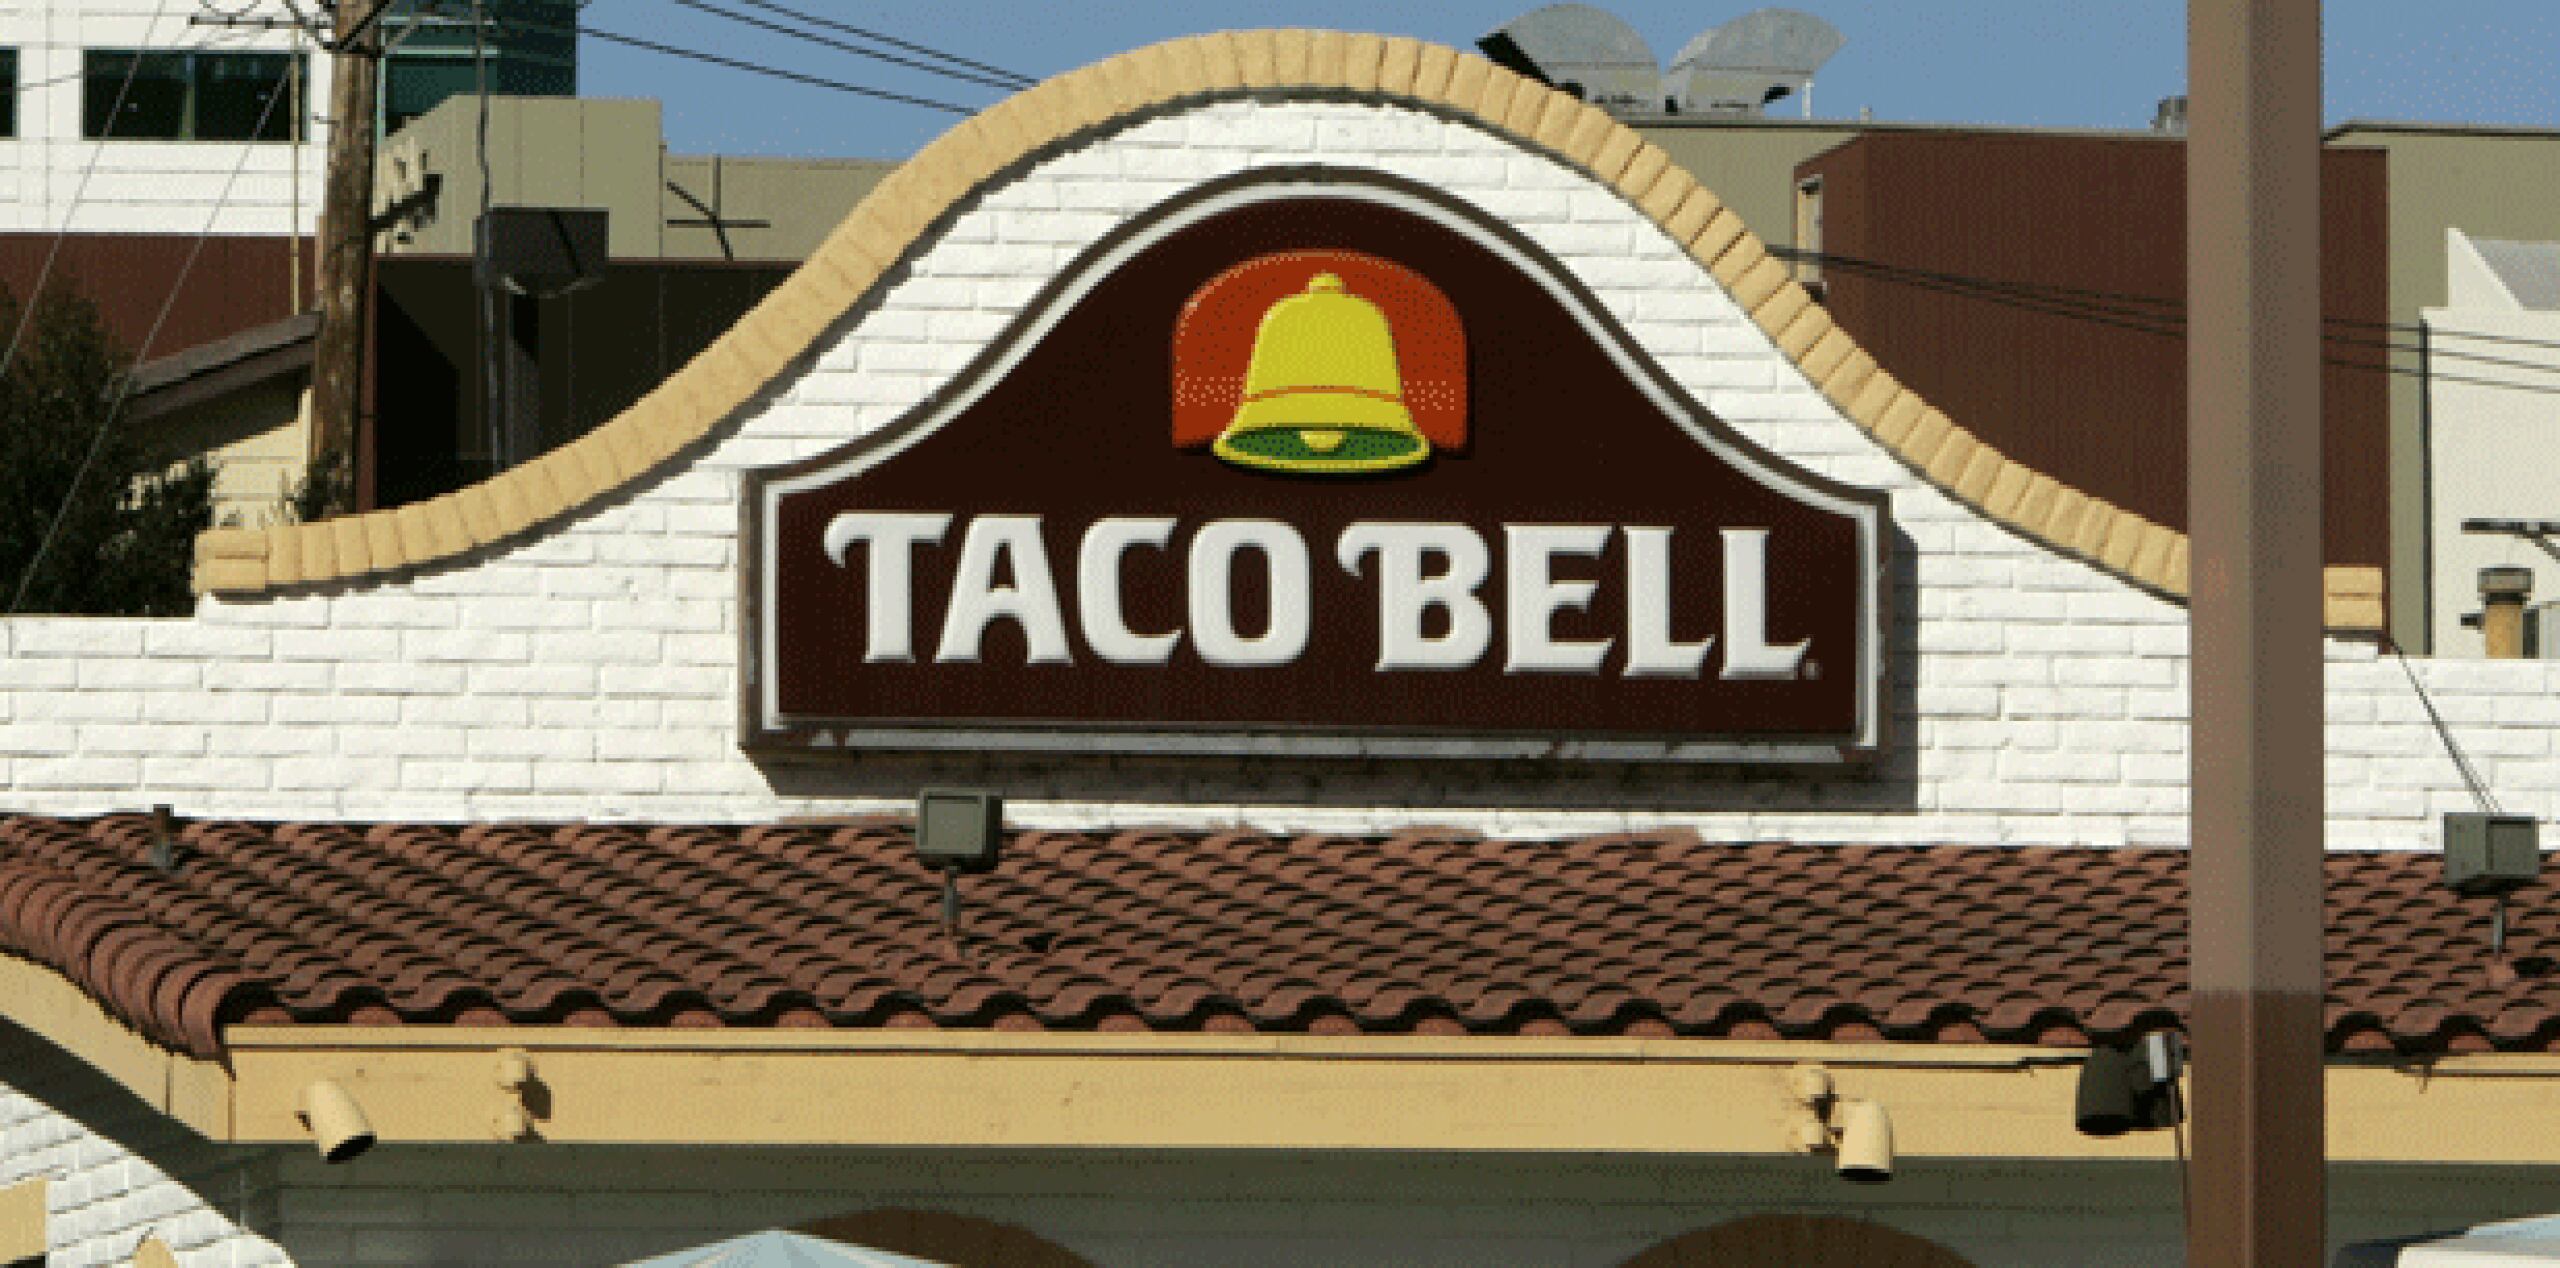 El sitio de internet Eater había reportado previamente que la gerencia del restaurante Taco Bell había solicitado una licencia de expendio de licor. (Archivo)